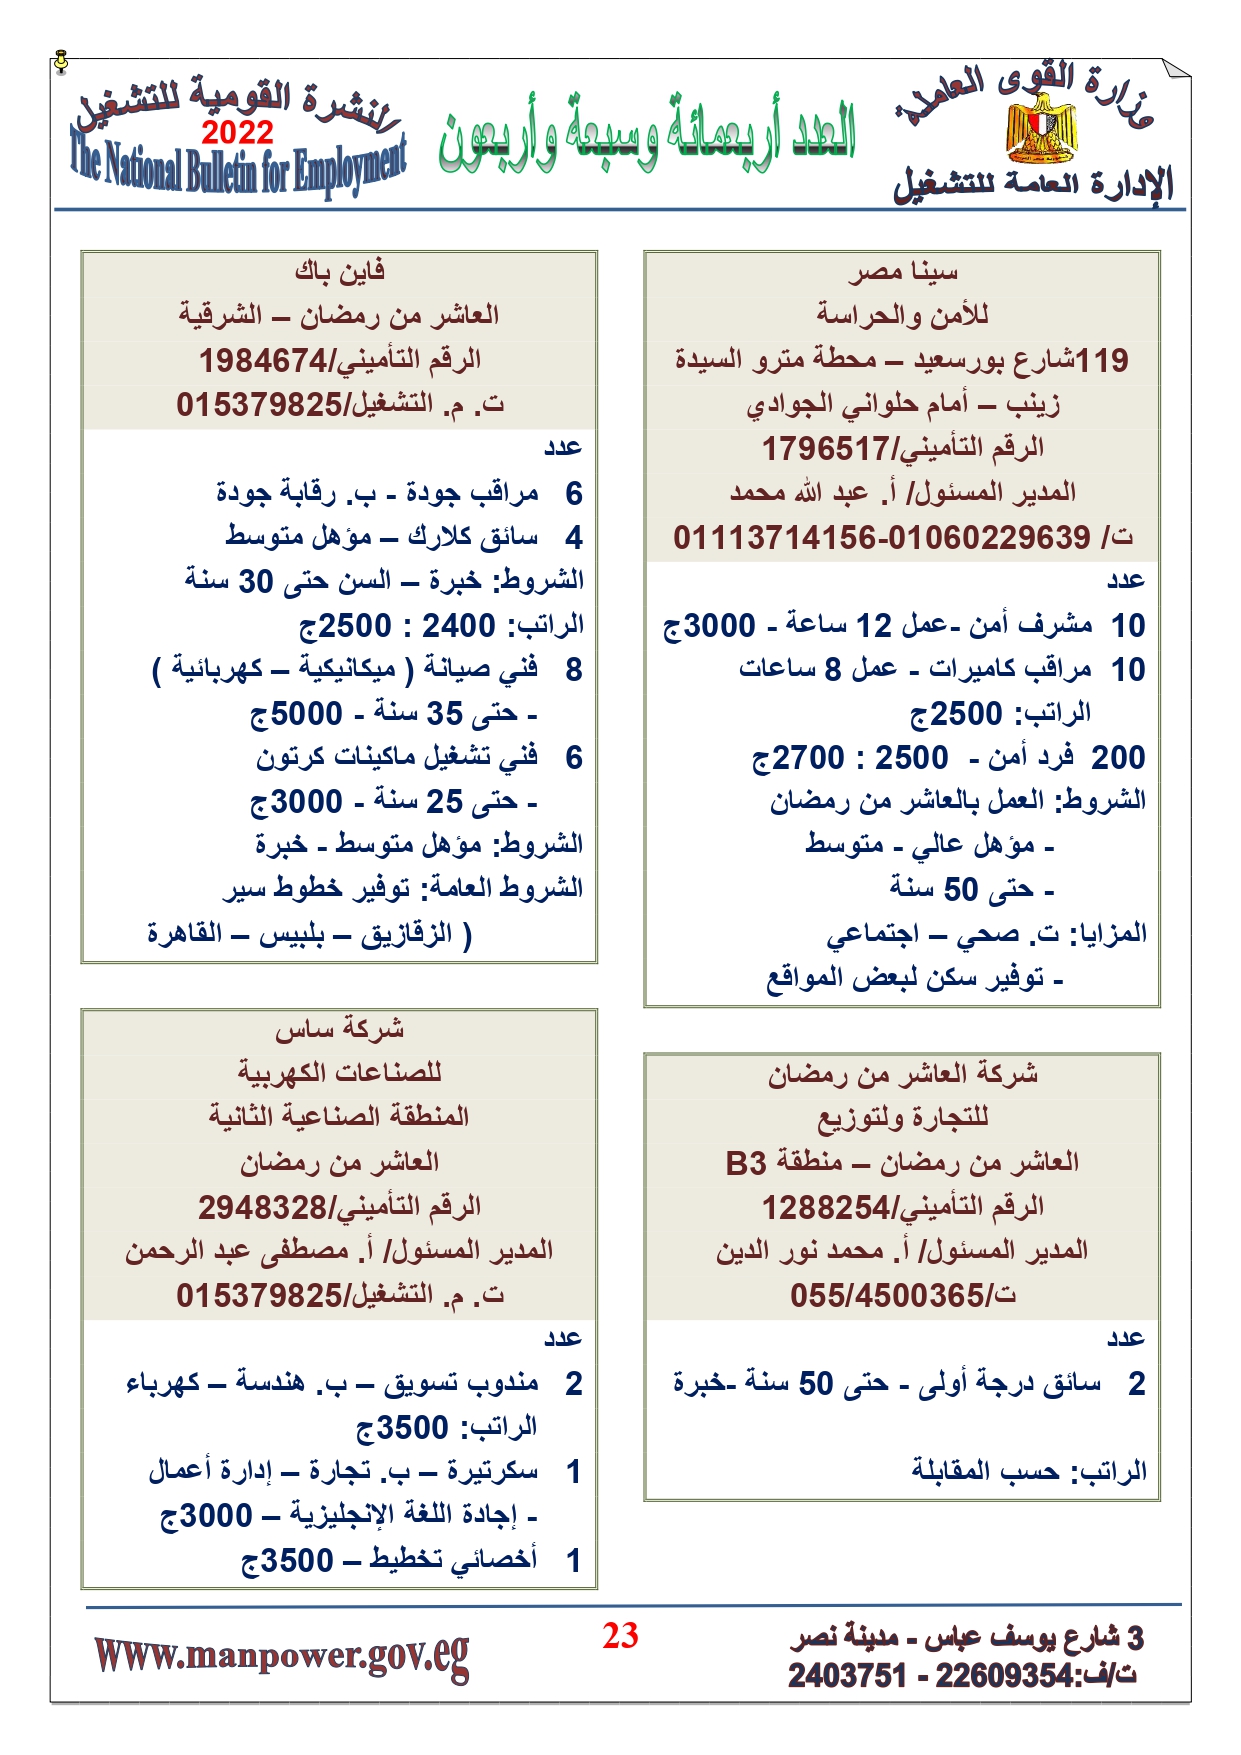 وظائف خالية بمصر وزارة القوي العاملة تعلن عن 2530 وظيفة شاغرة لجميع المؤهلات خلال فبراير ومارس 2022 15